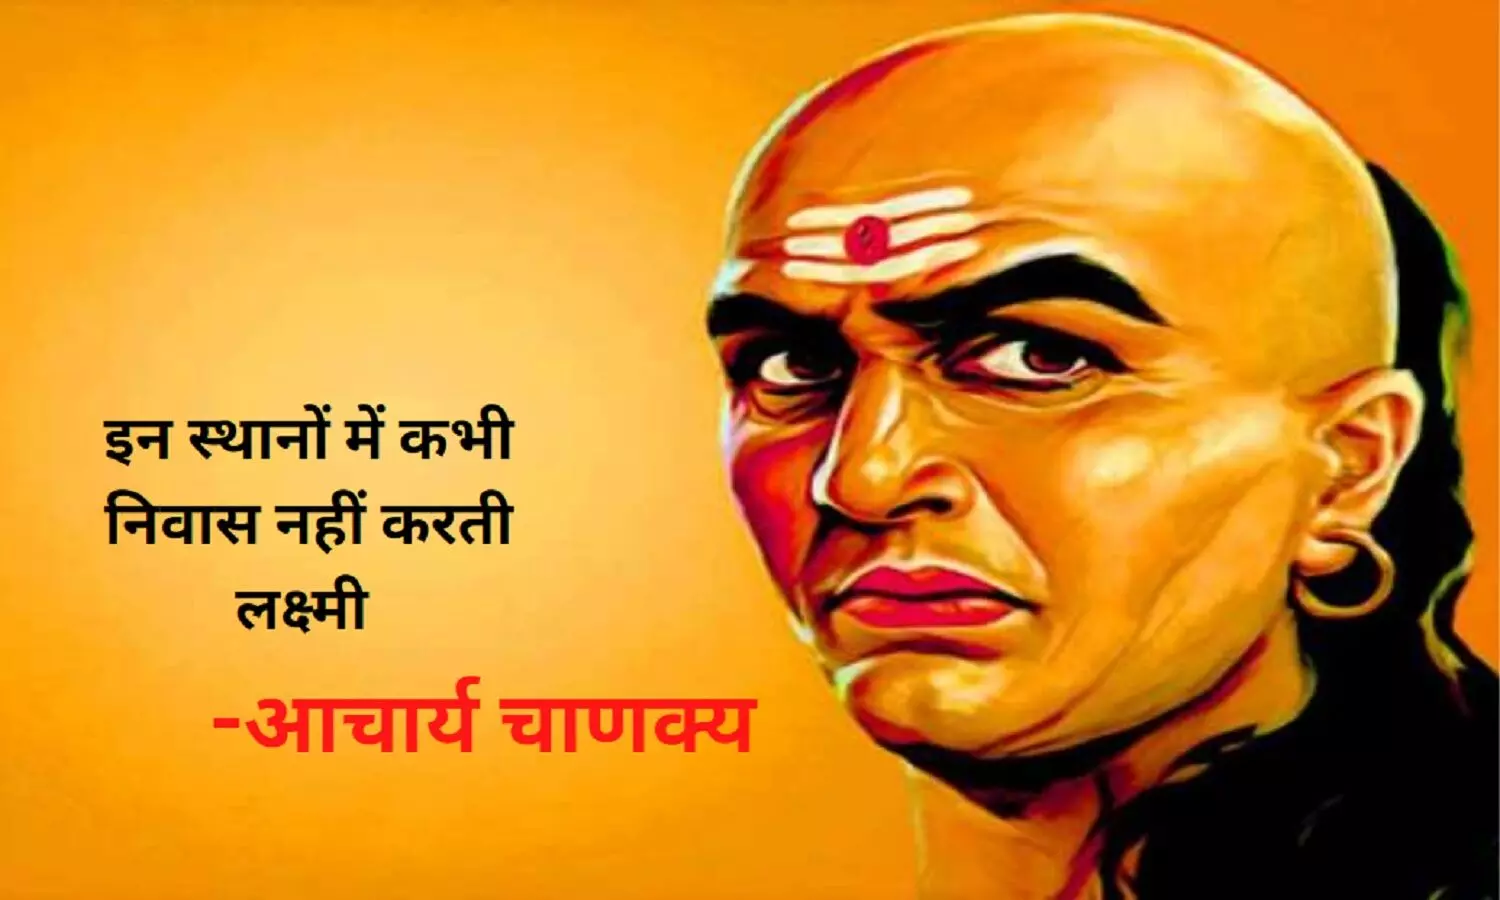 Chanakya Niti For Money: इन जगहों को त्याग देती हैं मां लक्ष्मी, छा जाती है कंगाली, जानें